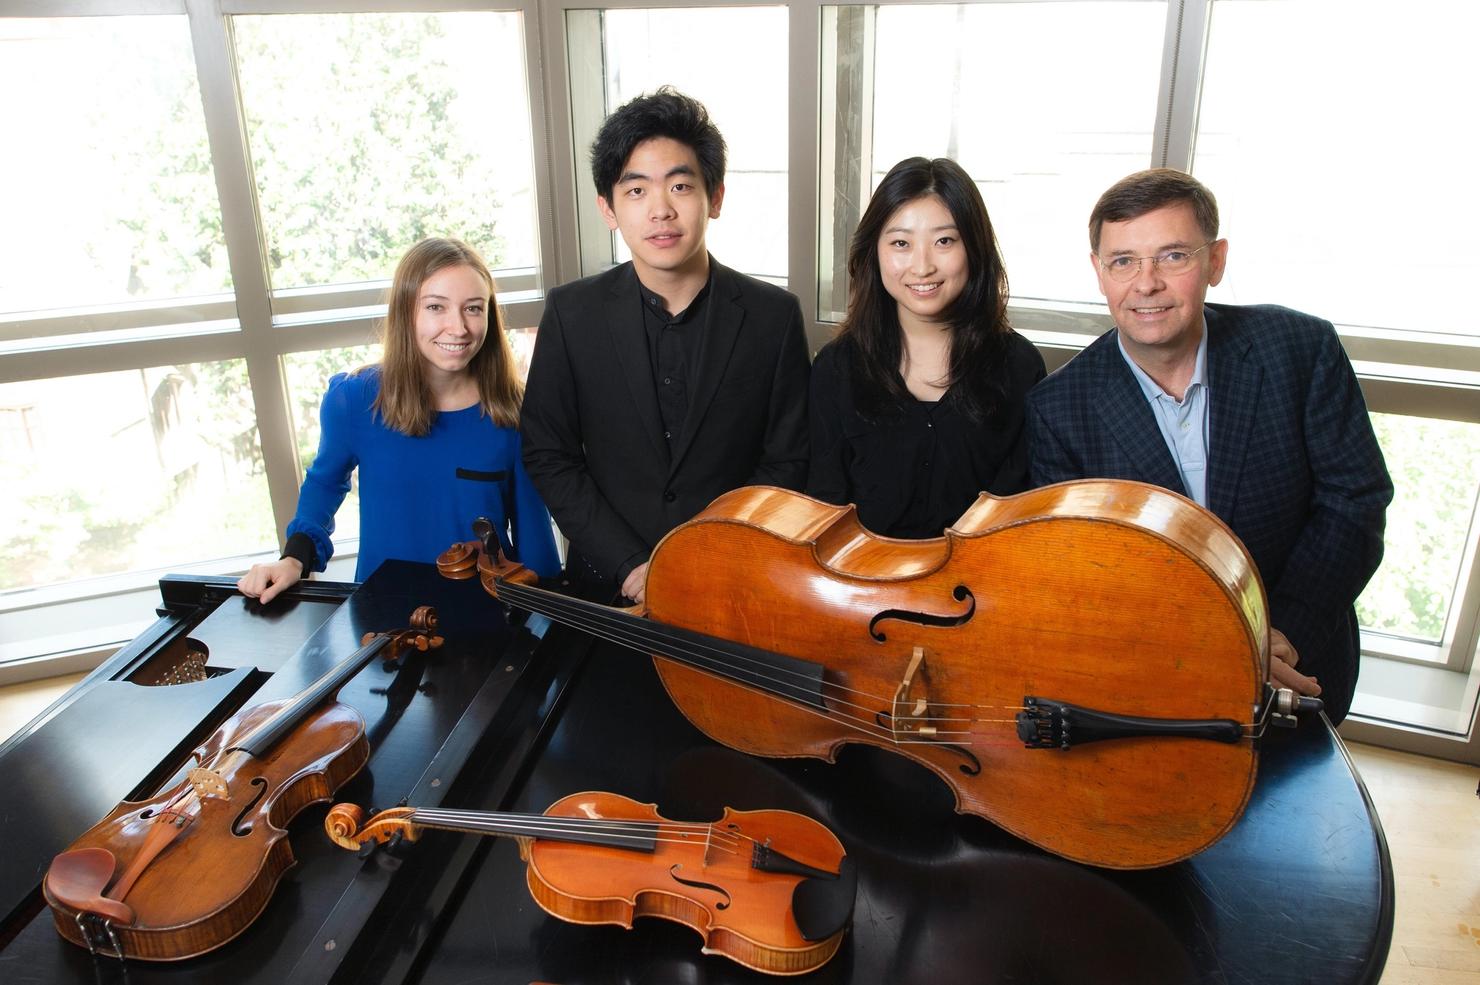 Claire Bourg, Daniel Hsu, Sydney Lee and Roberto Diaz posing behind their instruments (piano, violin, cello, viola)